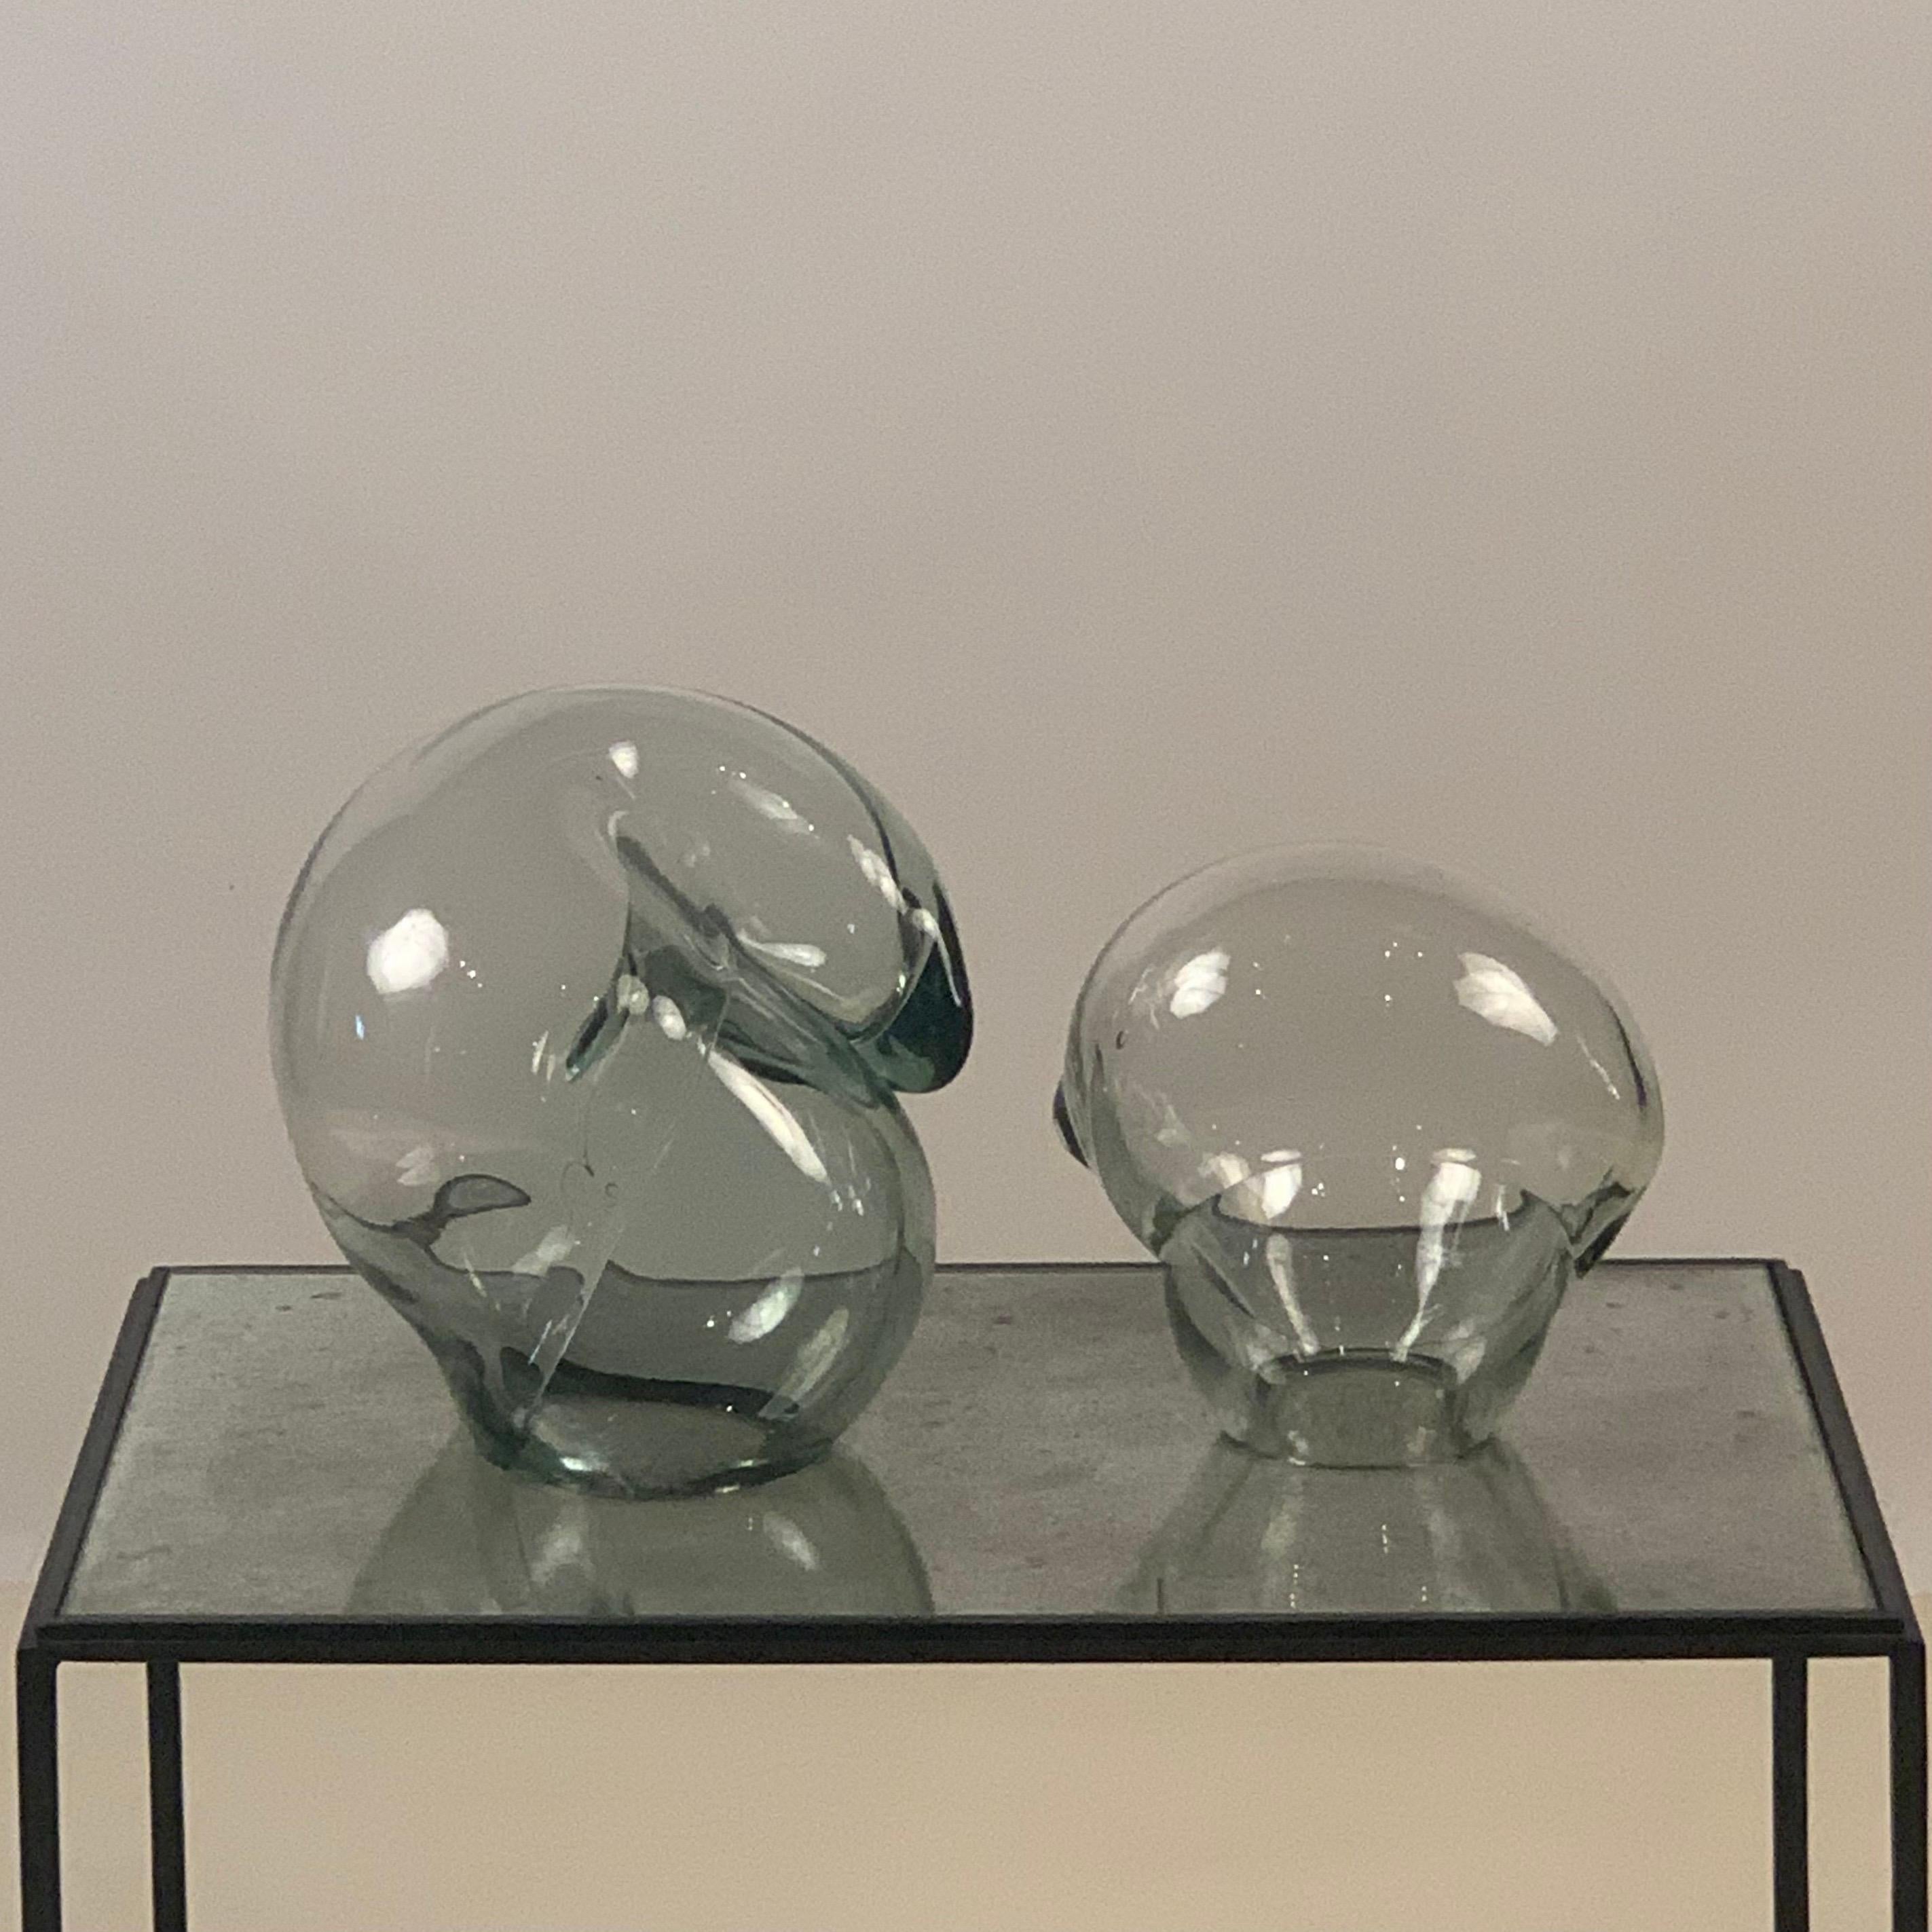 Ensemble de deux sculptures orbes en verre d'art transparent de John Bingham, vers 1980. Signé (gravé) 